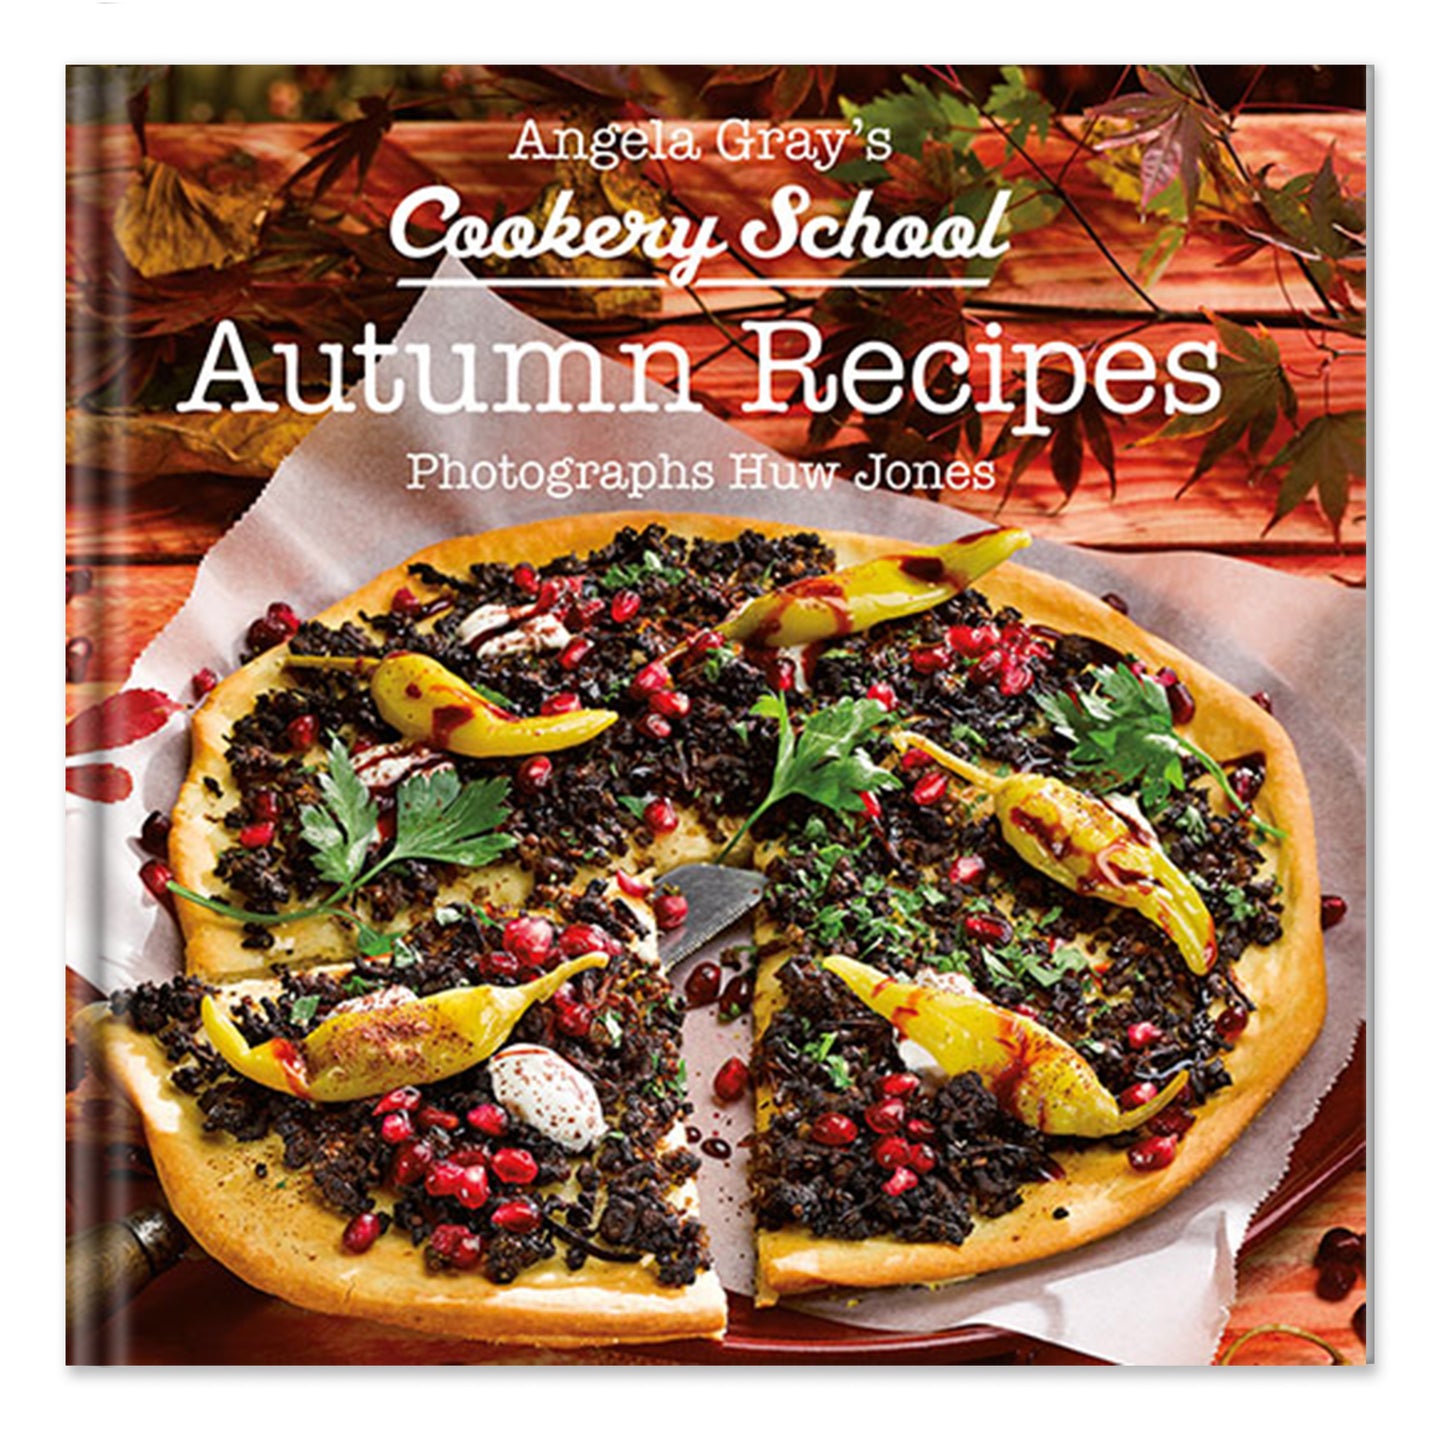 Angela Gray's Autumn Recipes